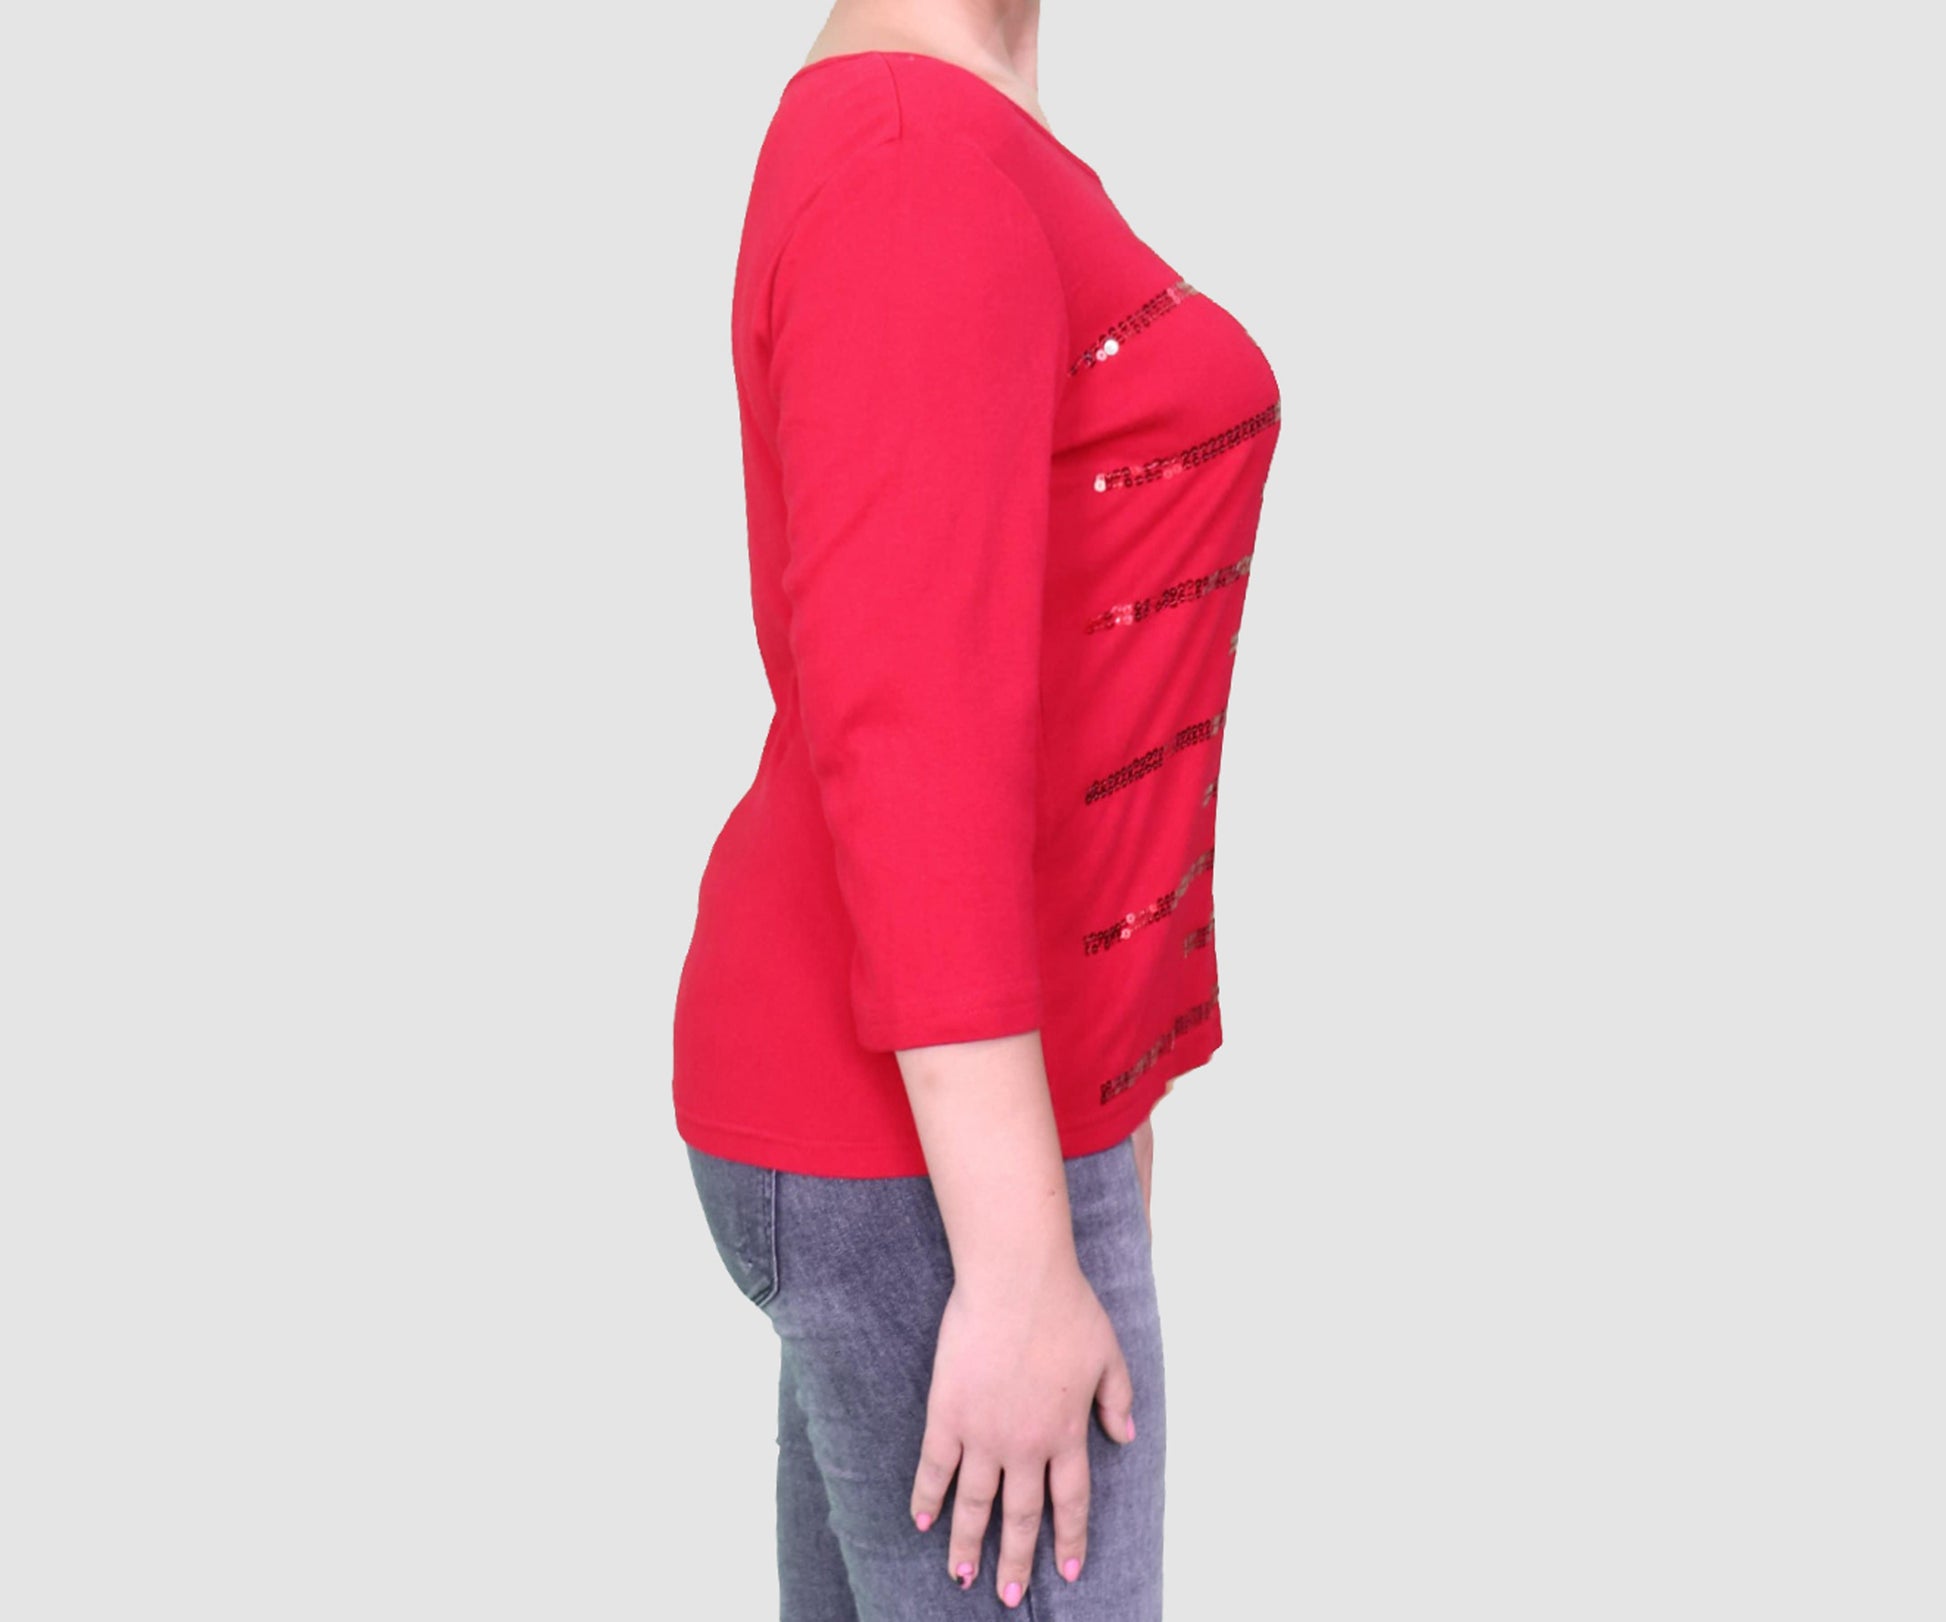 KAREN SCOTT Womens Tops L / Red Long Sleeve Top